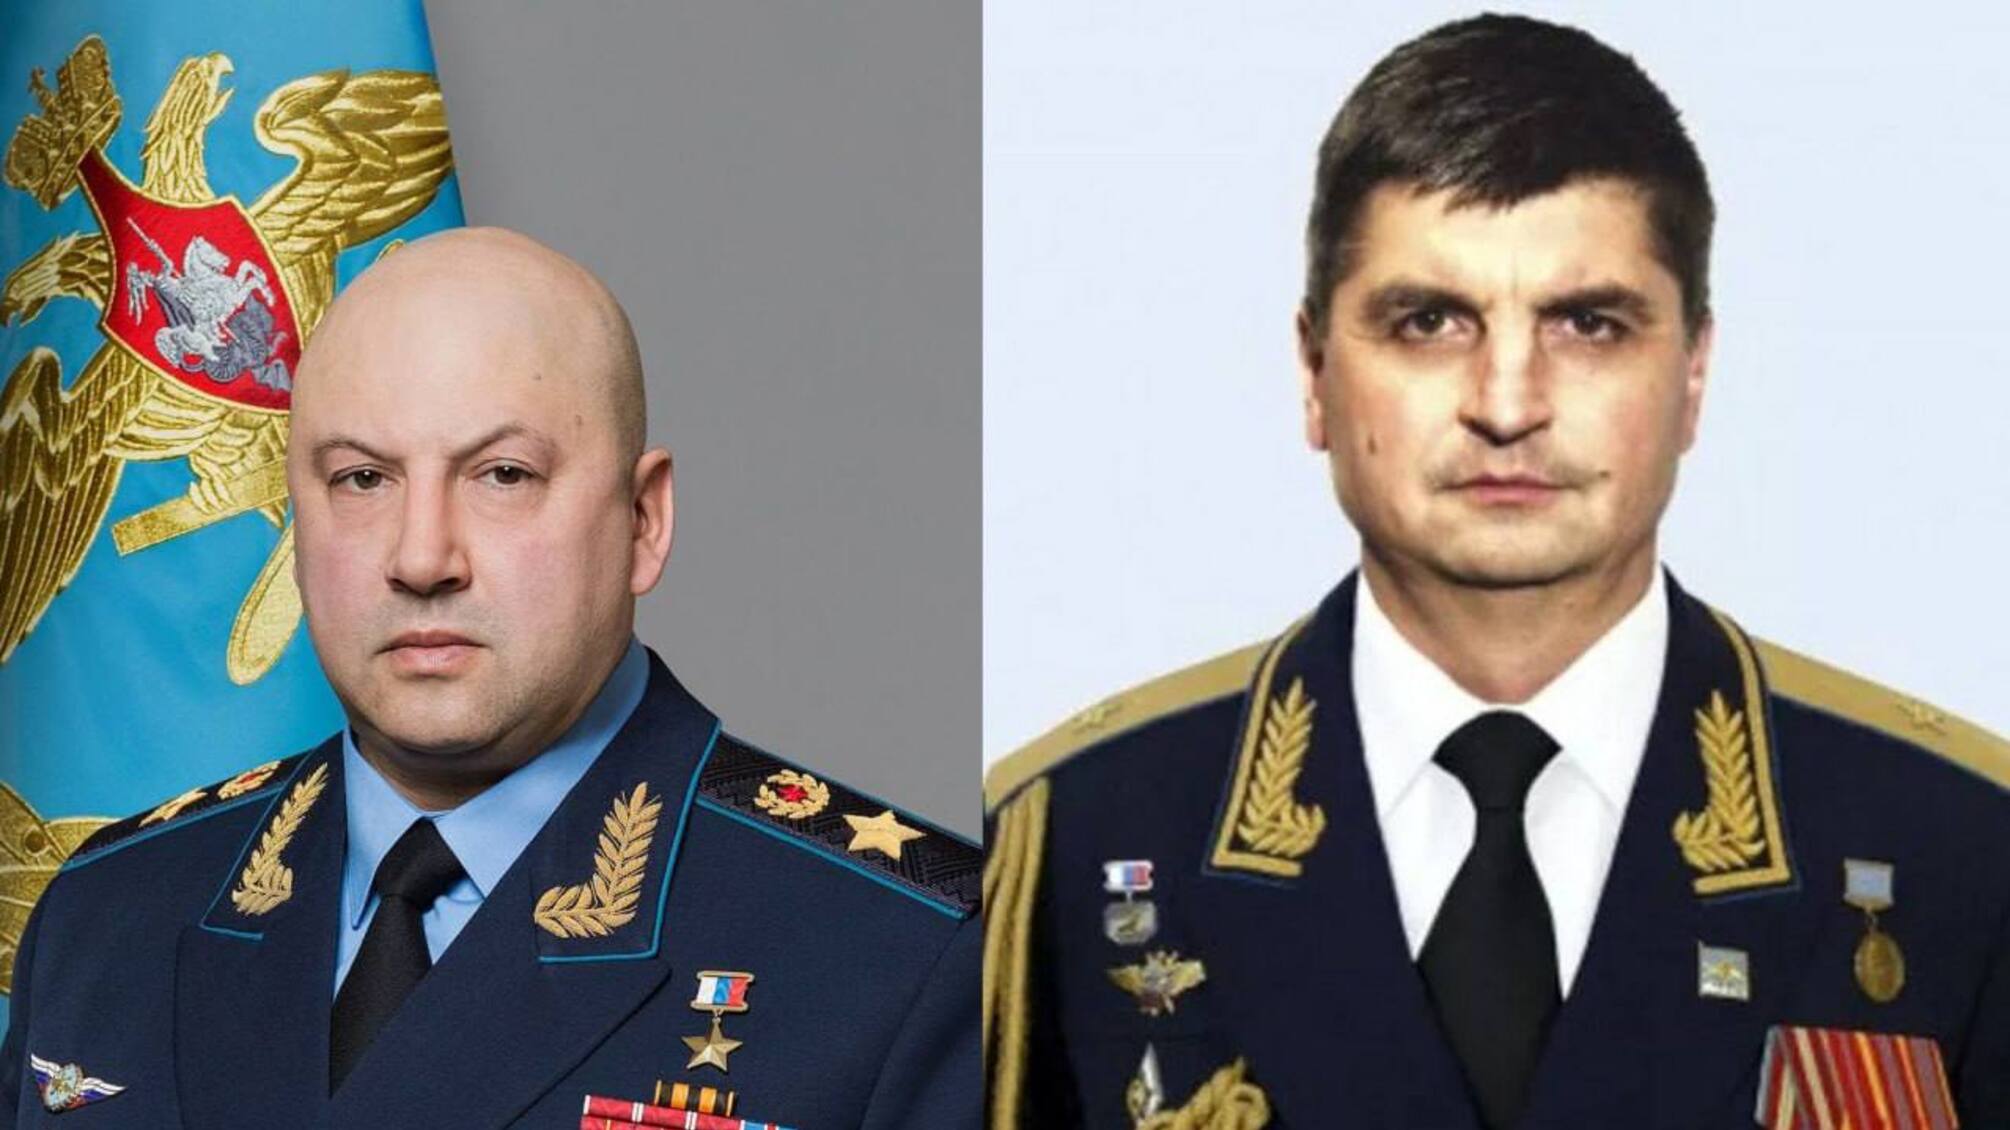 Суровікін та його заступник генерал-полковник Юдін у СІЗО 'Лефортово'? – росЗМІ